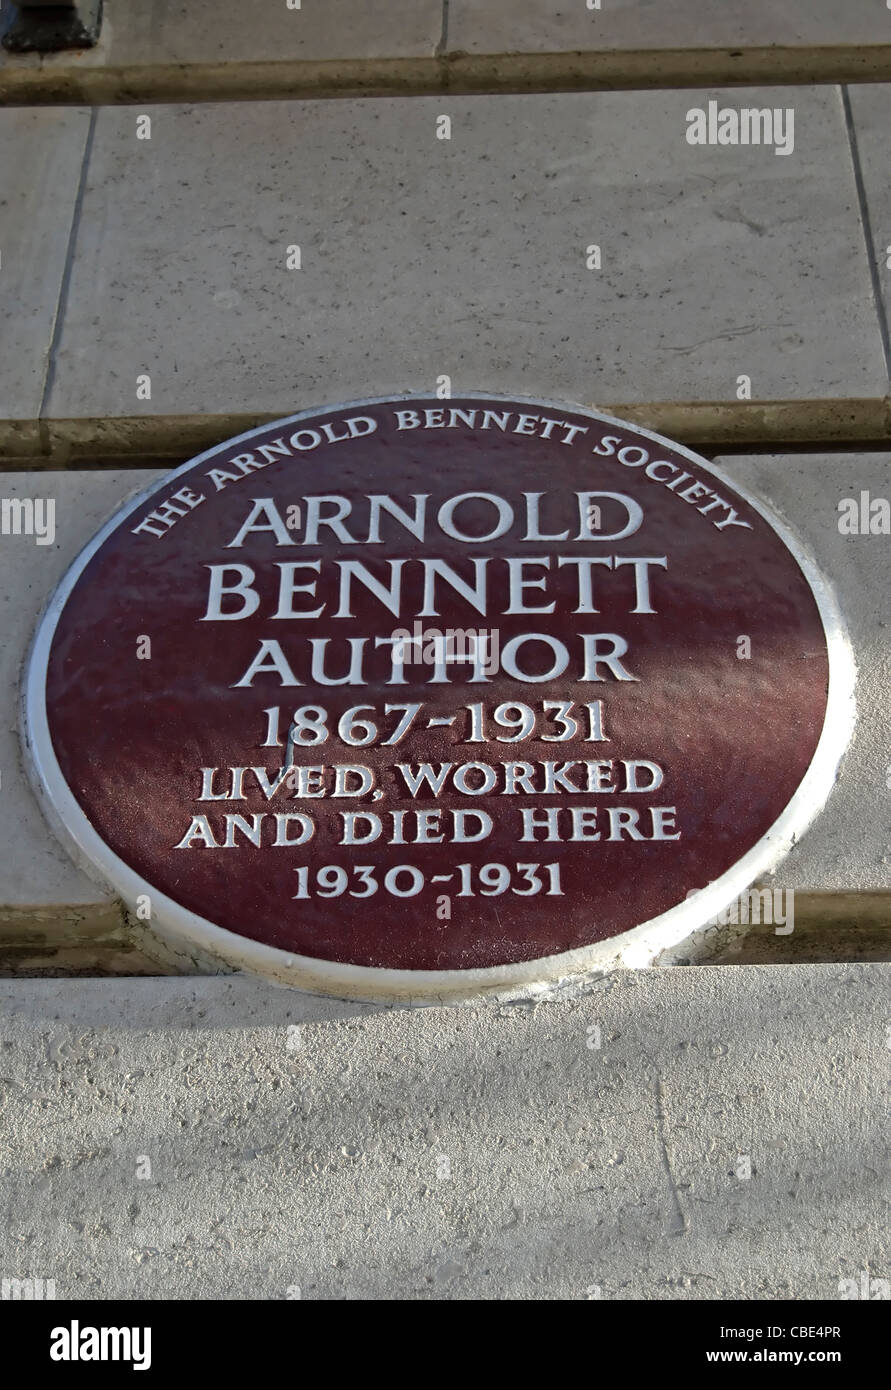 Arnold Bennett plaque société marquage d'un accueil de l'auteur à cour de Chiltern, Baker Street, Londres, Angleterre Banque D'Images